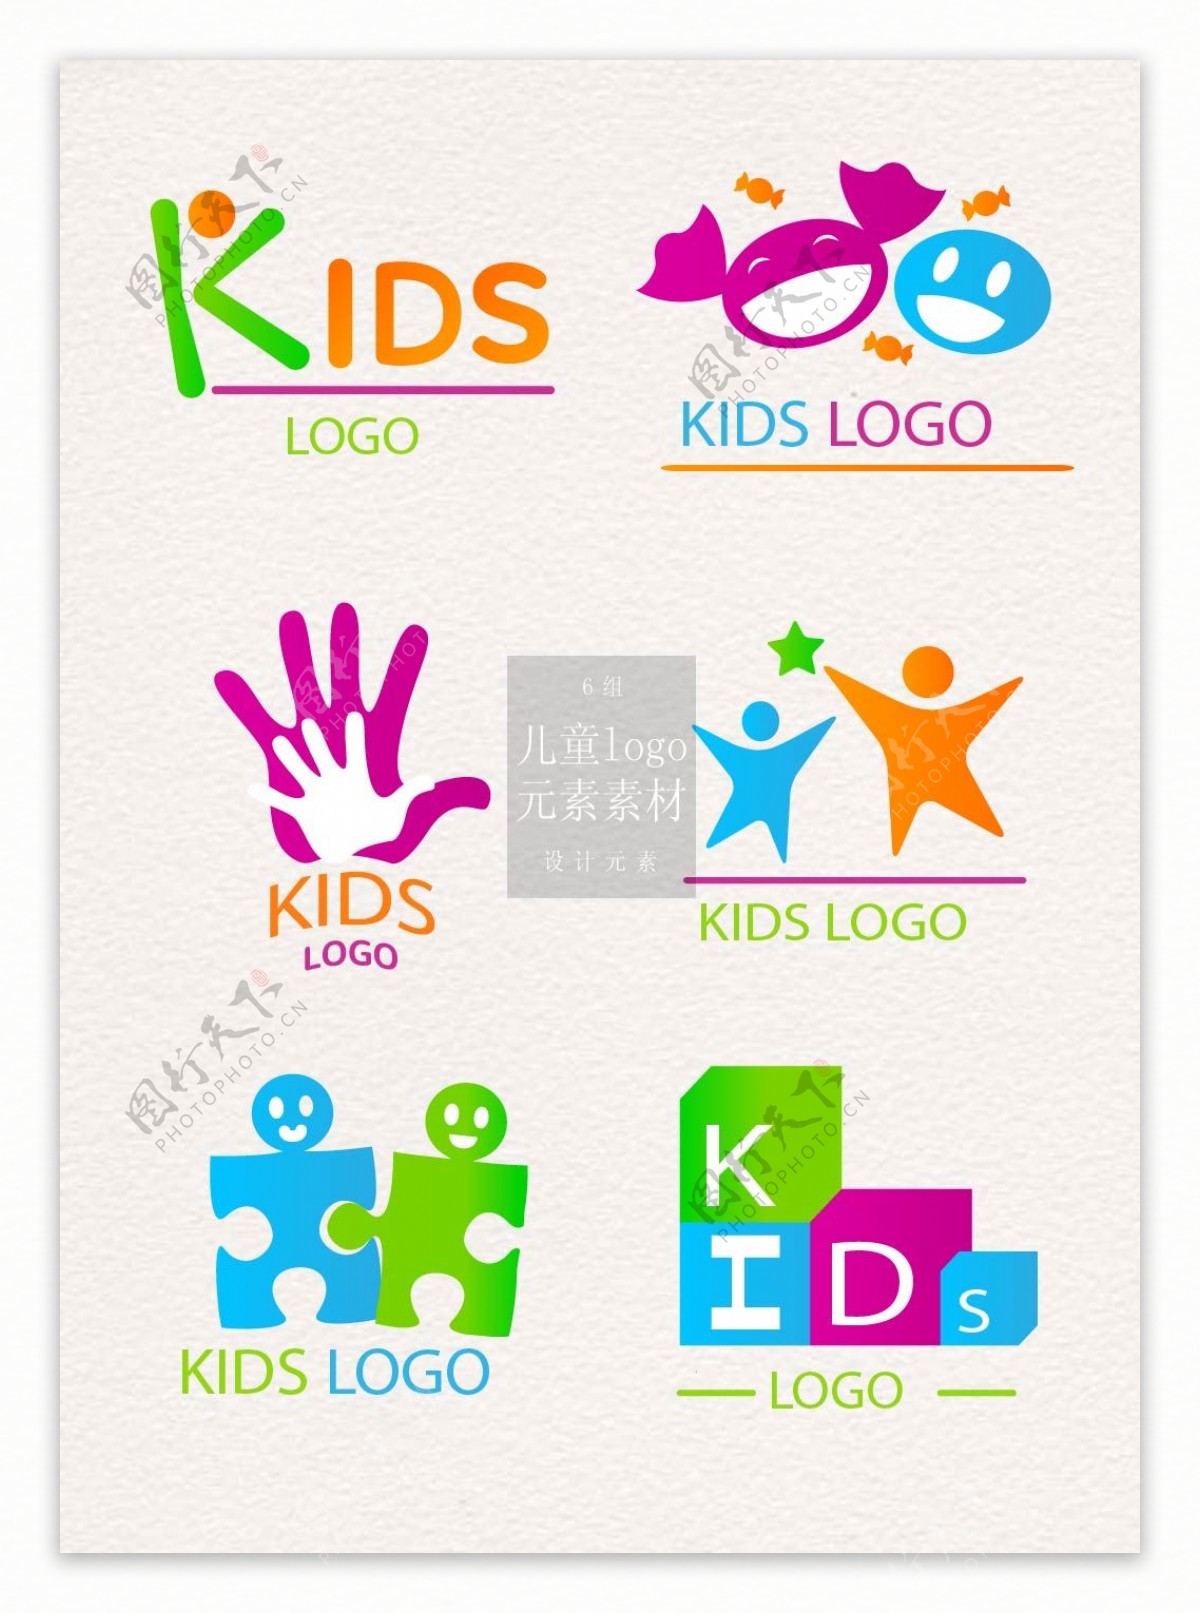 彩色的儿童logo设计素材